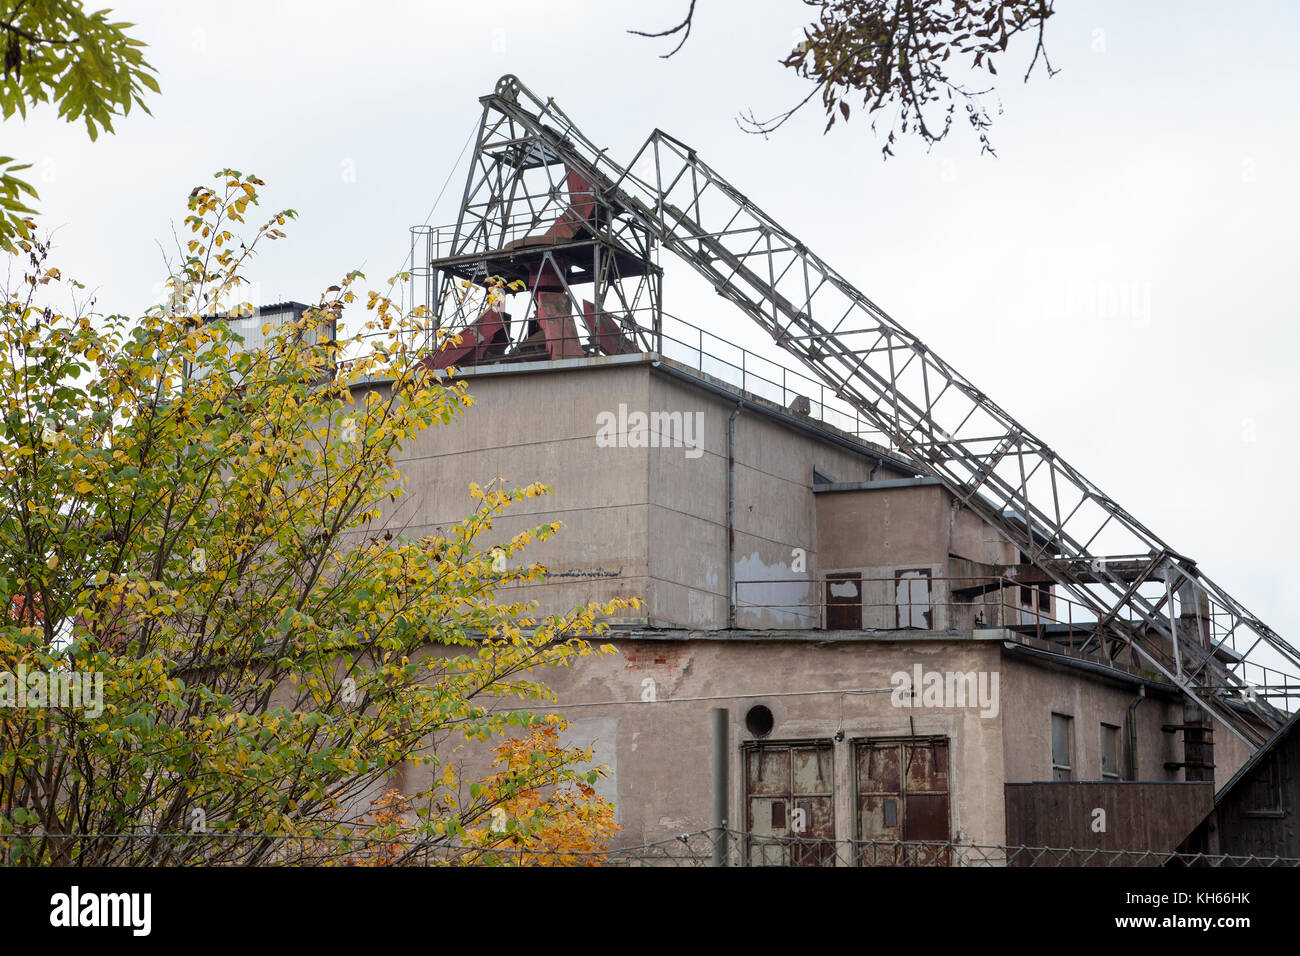 Hälleforsnäs abbandonate industria del ferro in södermanland,dopo 350 anni lo stabilimento è stato chiuso. Foto Stock